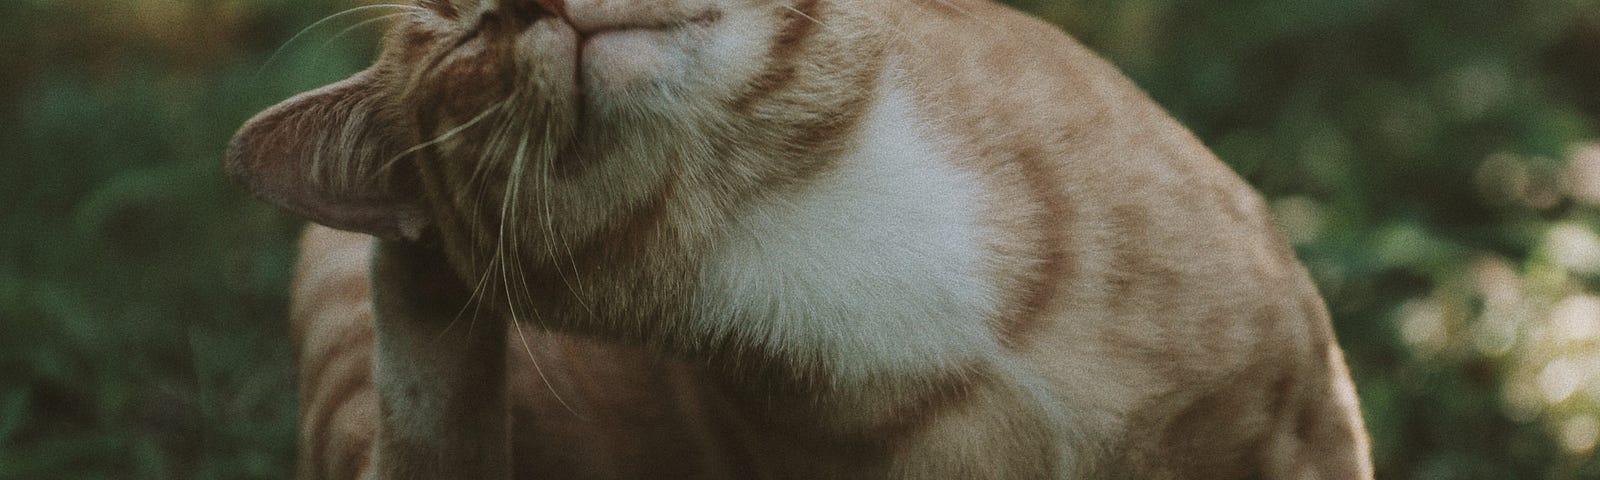 Orange tabby cat scratching ear